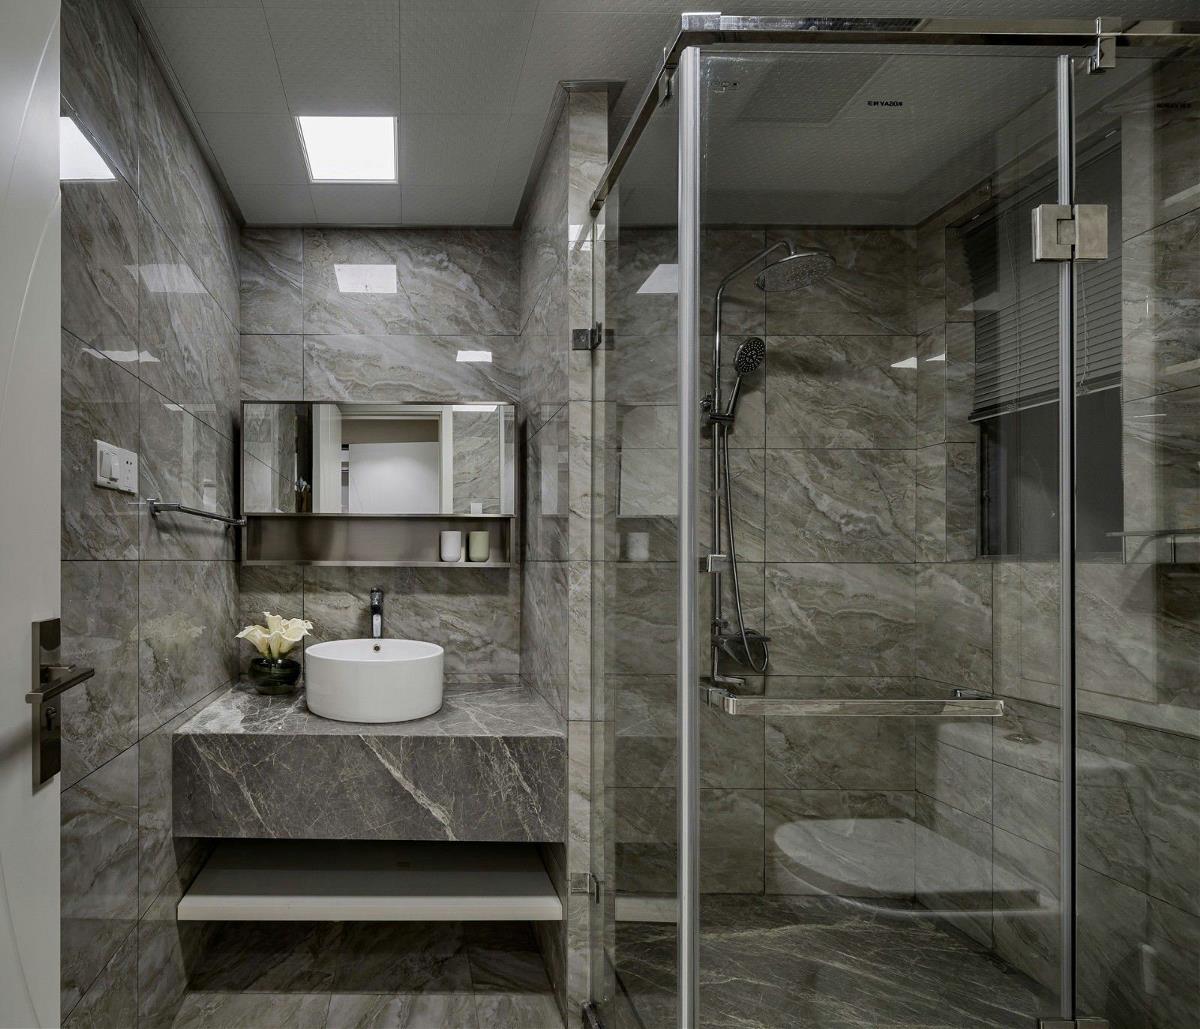 间卫间浴室整个的四周墙面以透明玻璃为装饰，是整个空间有着通透明亮之感，充满着现代的时尚设计，很是别致